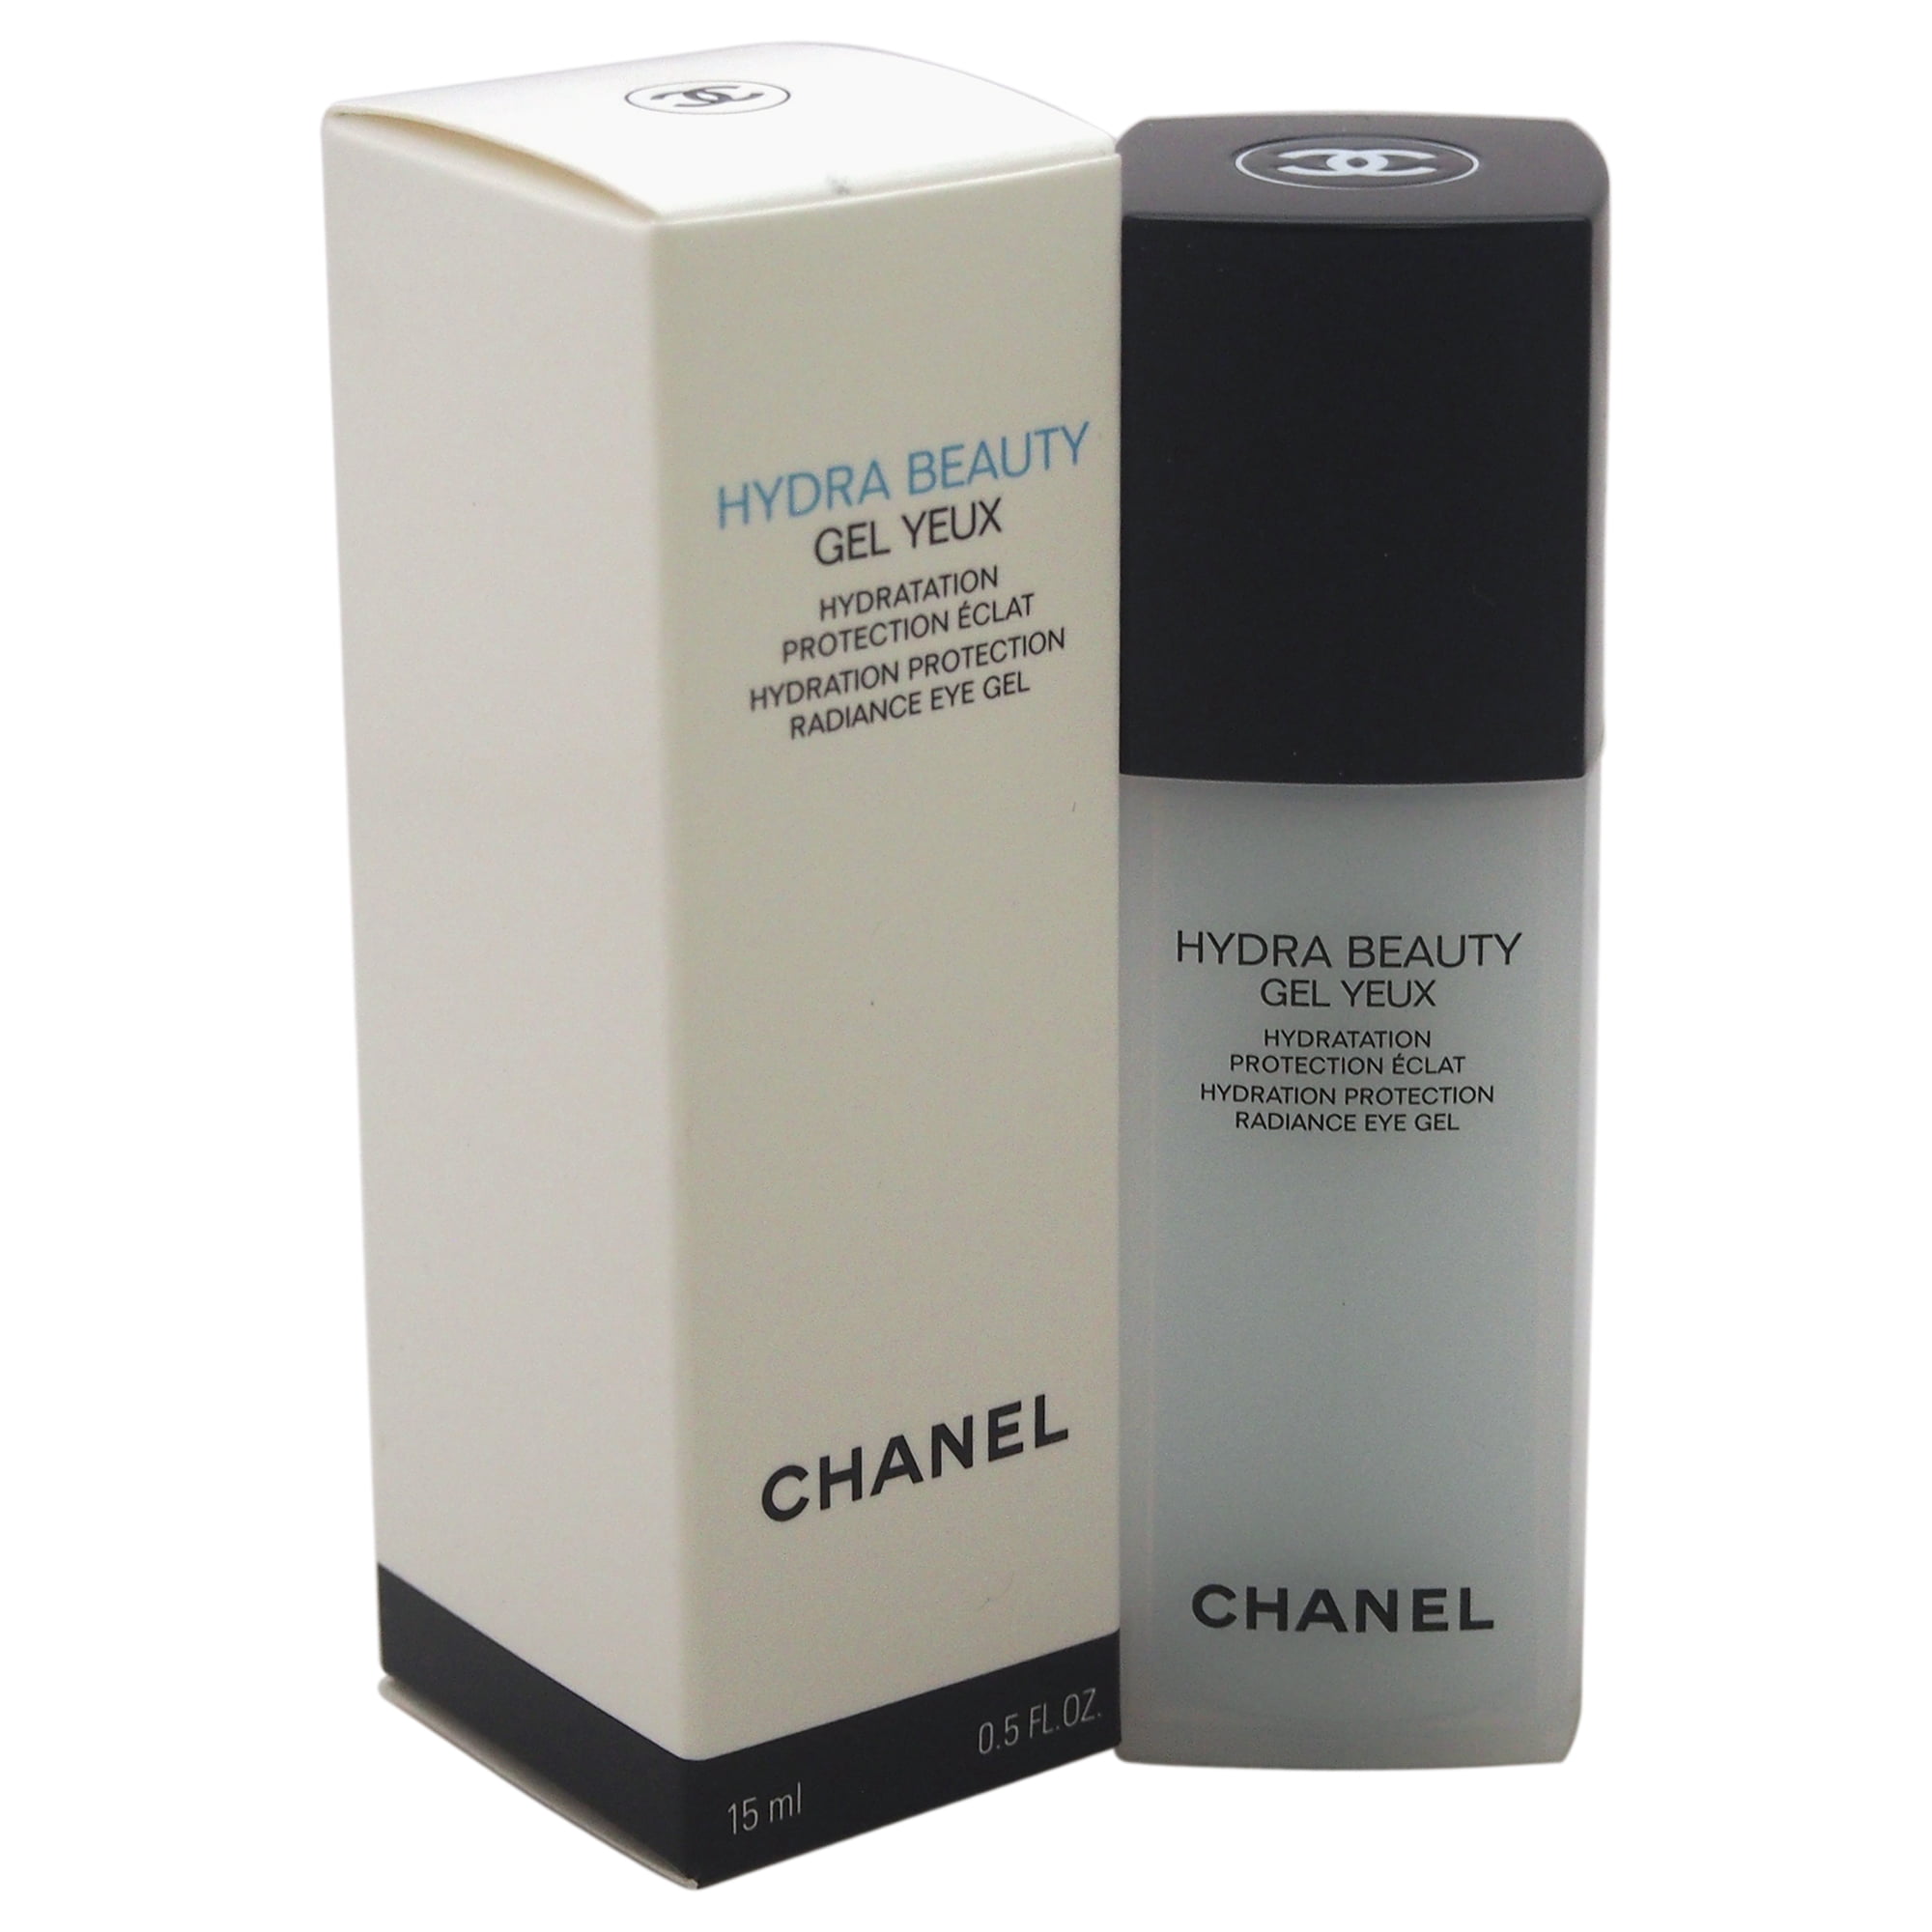 Chanel hydra Beauty Gel Creme. Chanel hydra Beauty Micro Serum. Chanel hydra Beauty Gel yeux. Chanel hydra Beauty Serum.